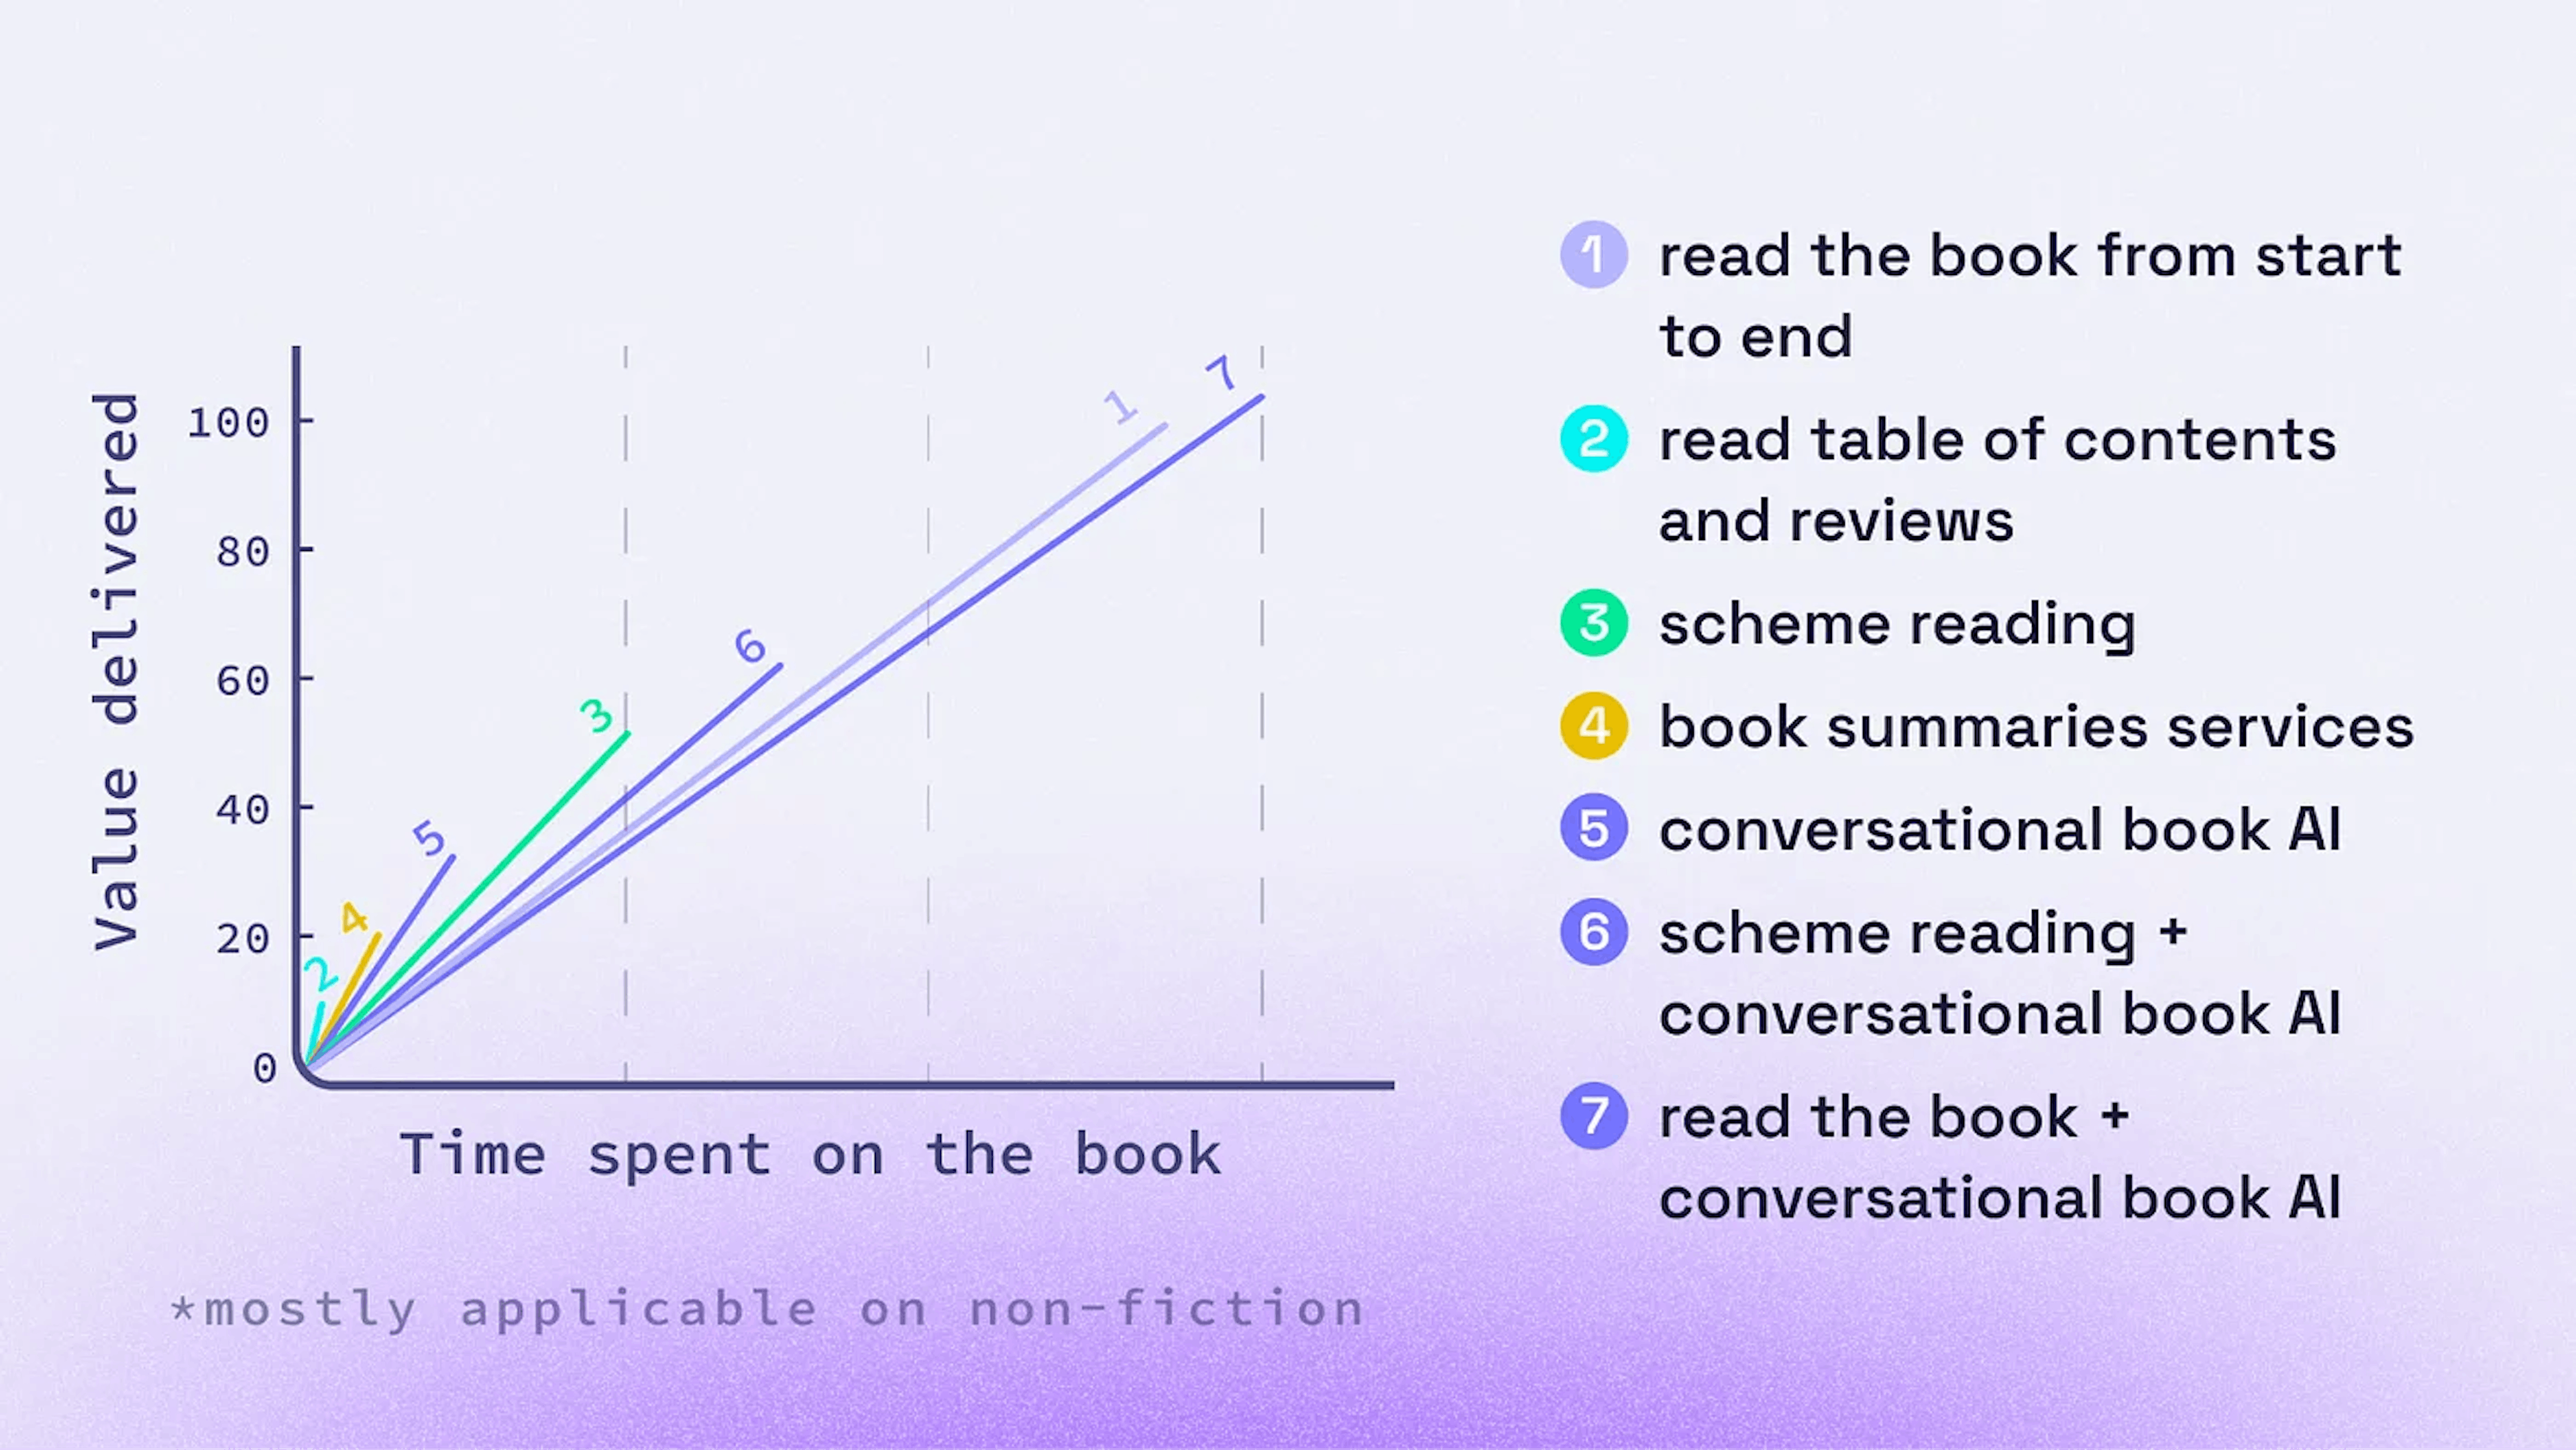 Opciones para familiarizarse con un libro antes de comprarlo o decidir leerlo